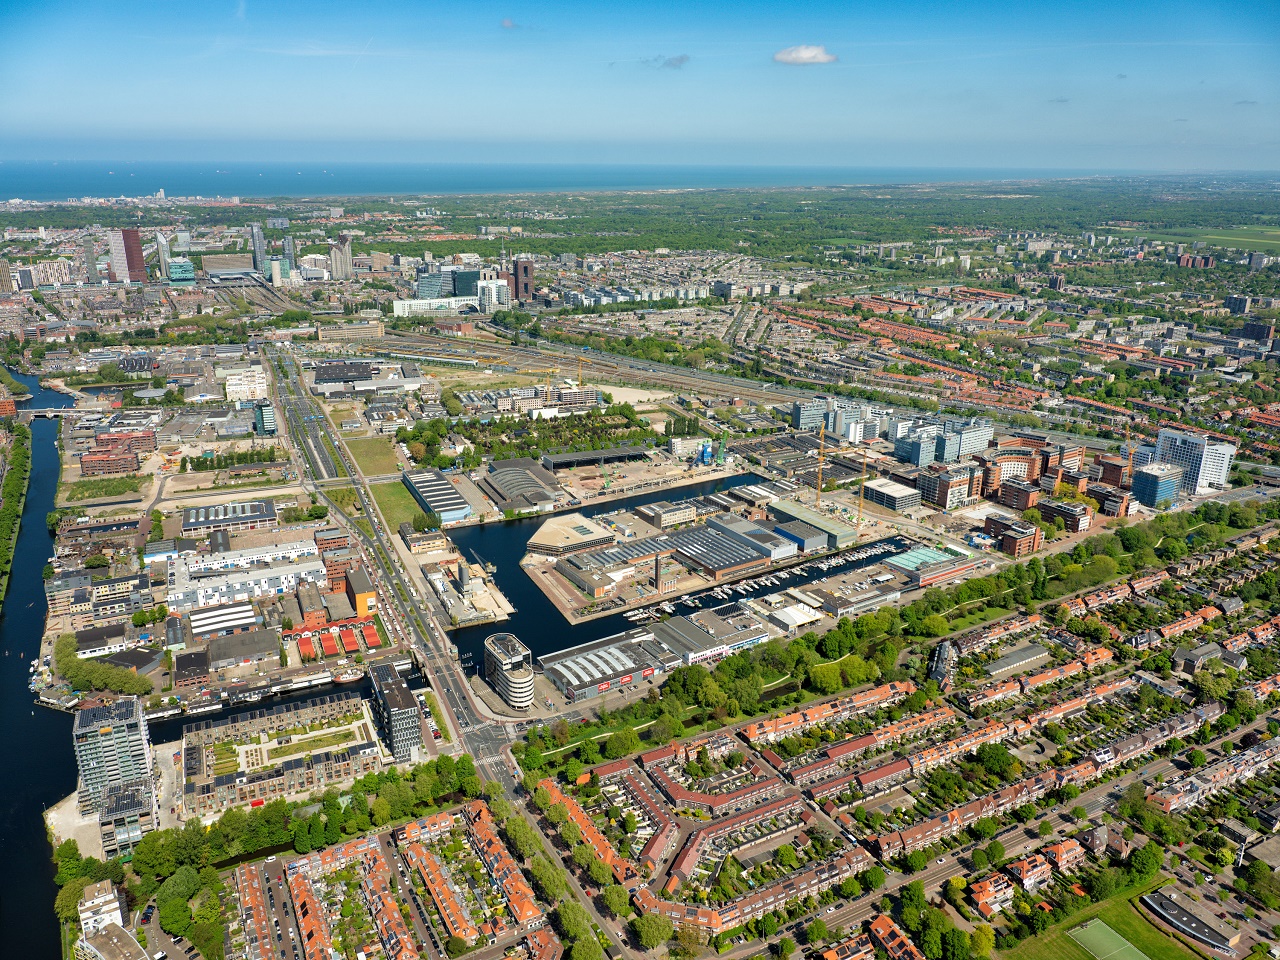 Luchtfoto van de BInckhorst, het industriele terrein en de kleine jachthaven in het midden.